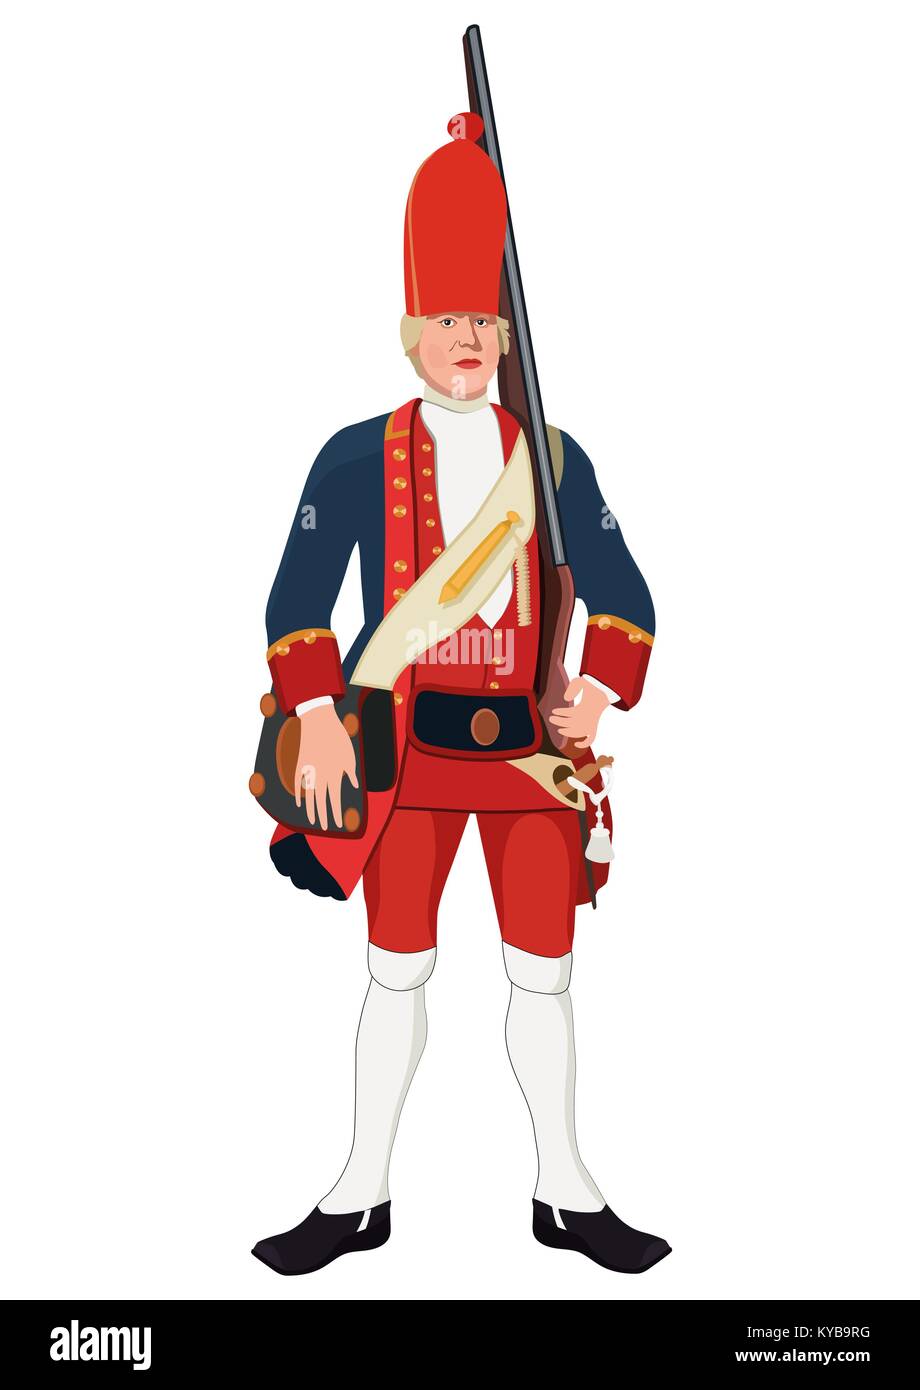 Grenadier, dessin vectoriel. Soldat vêtu de vieux militaire uniforme avec un fusil sur son épaule, peint le portrait. Isolé sur fond blanc Illustration de Vecteur